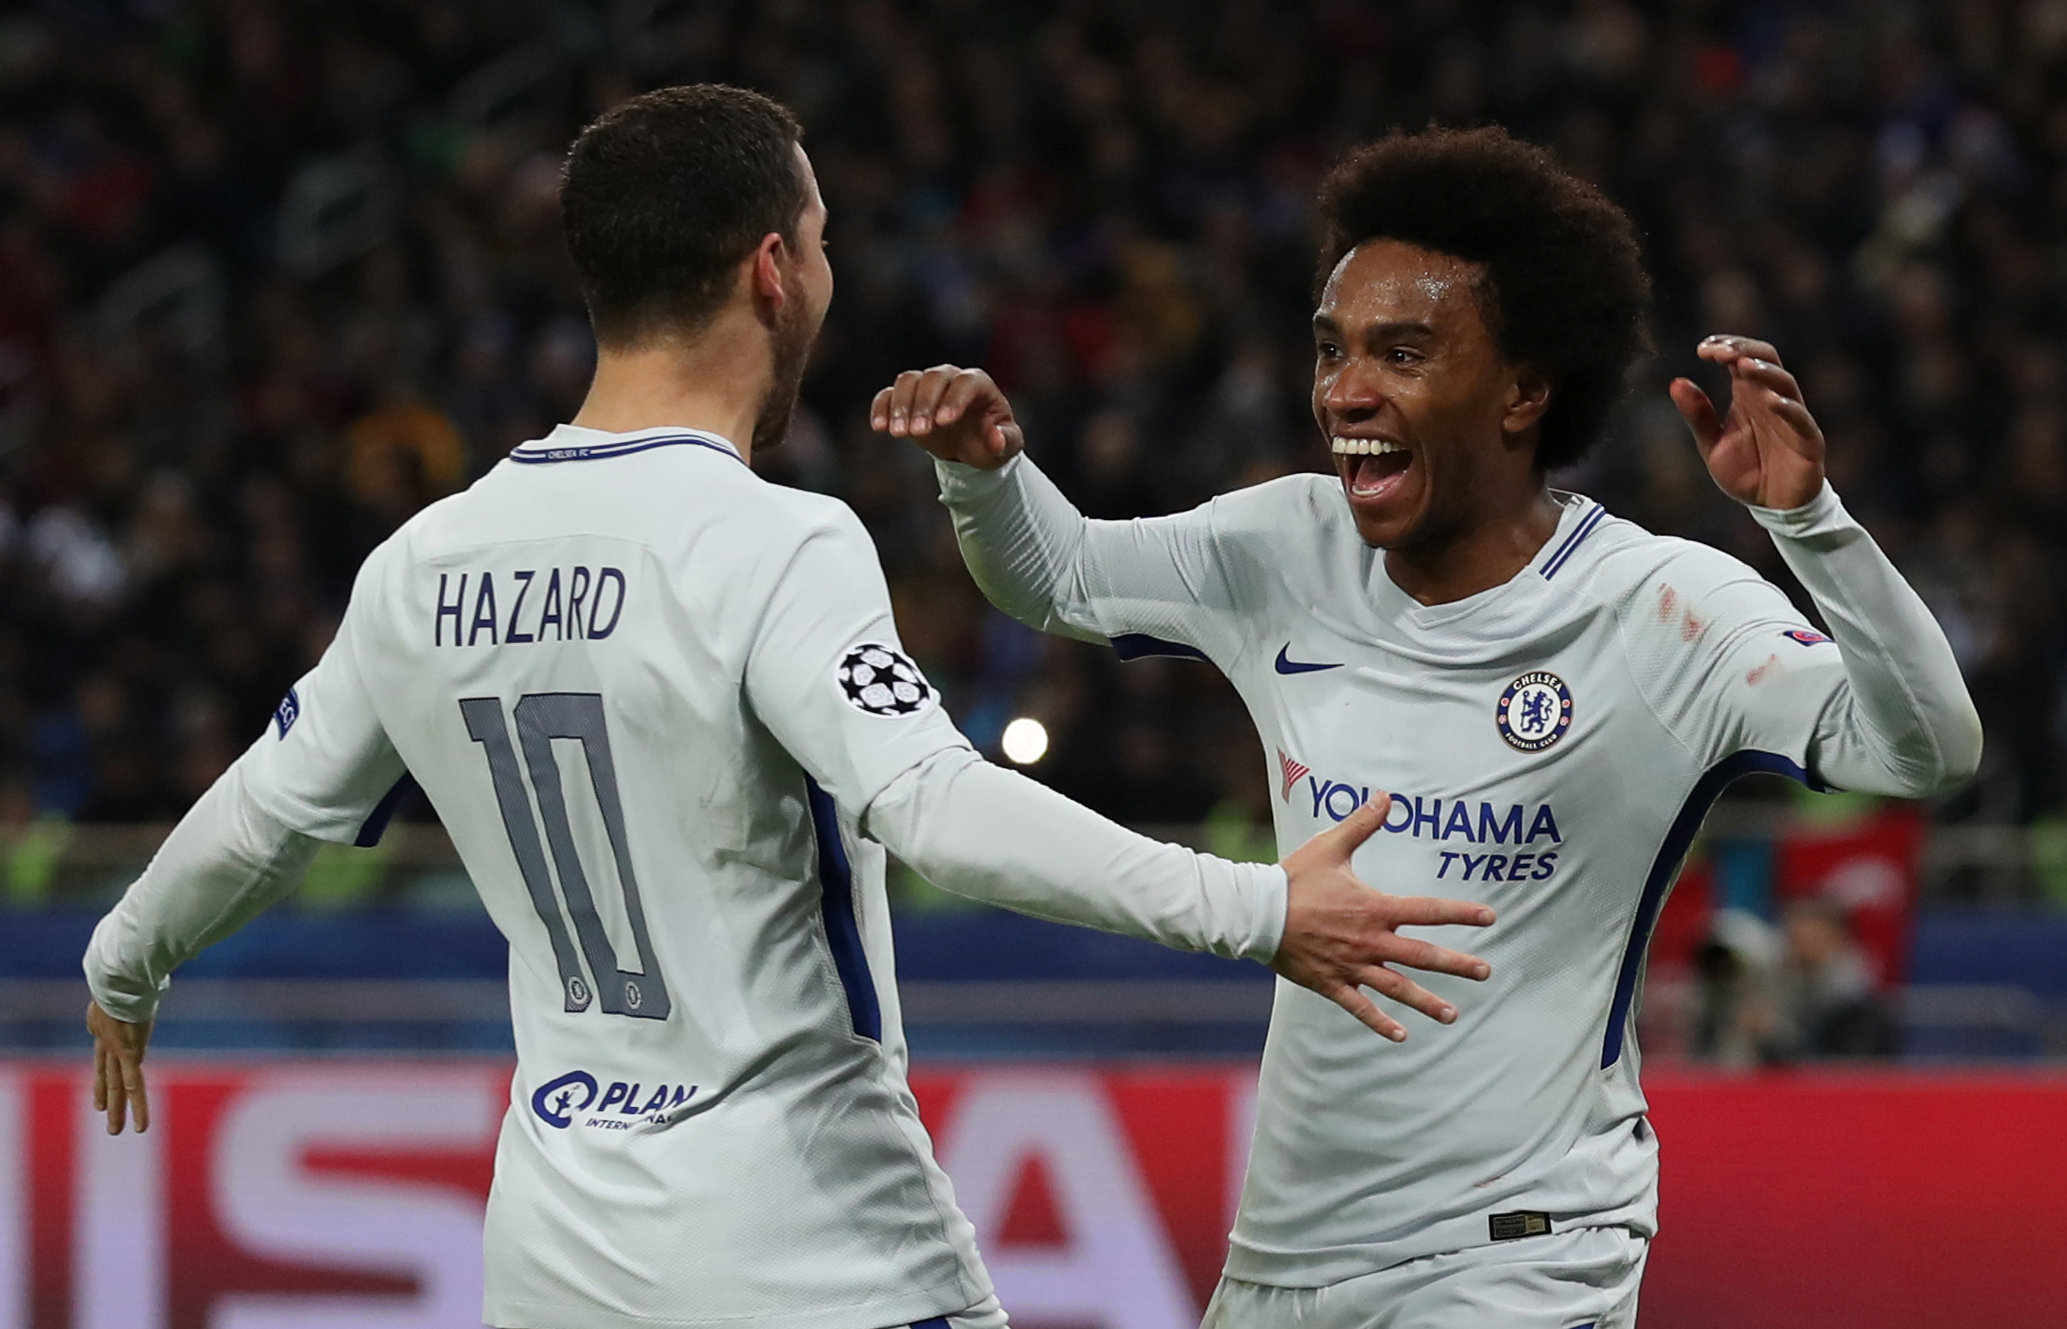 Bộ đôi Hazard (trái) và Willian cùng ghi bàn trong trận Chelsea thắng Qarabag 4-0. Ảnh: REUTERS